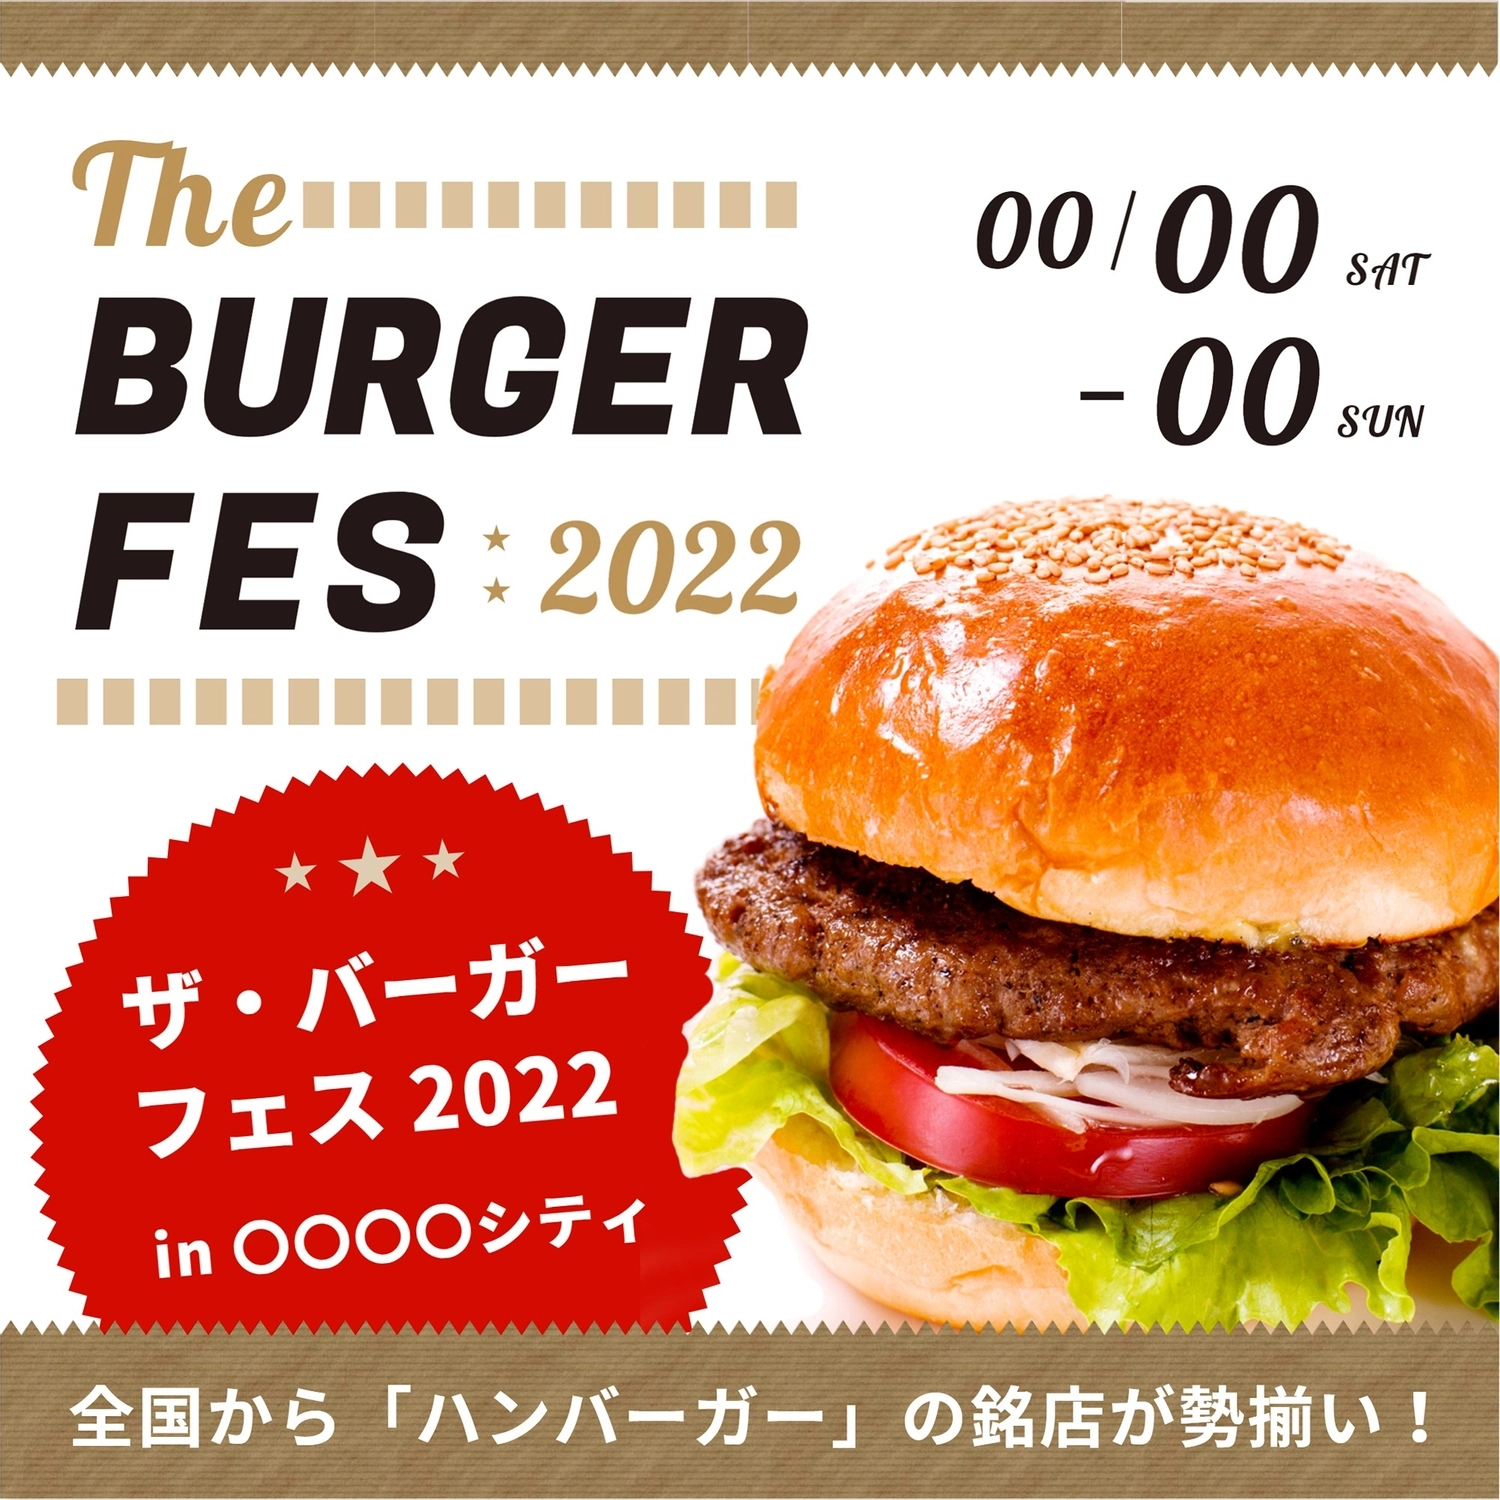 ハンバーガーフェス開催デザイン, バーガー, 白色の背景, ダイエット, Instagram広告テンプレート